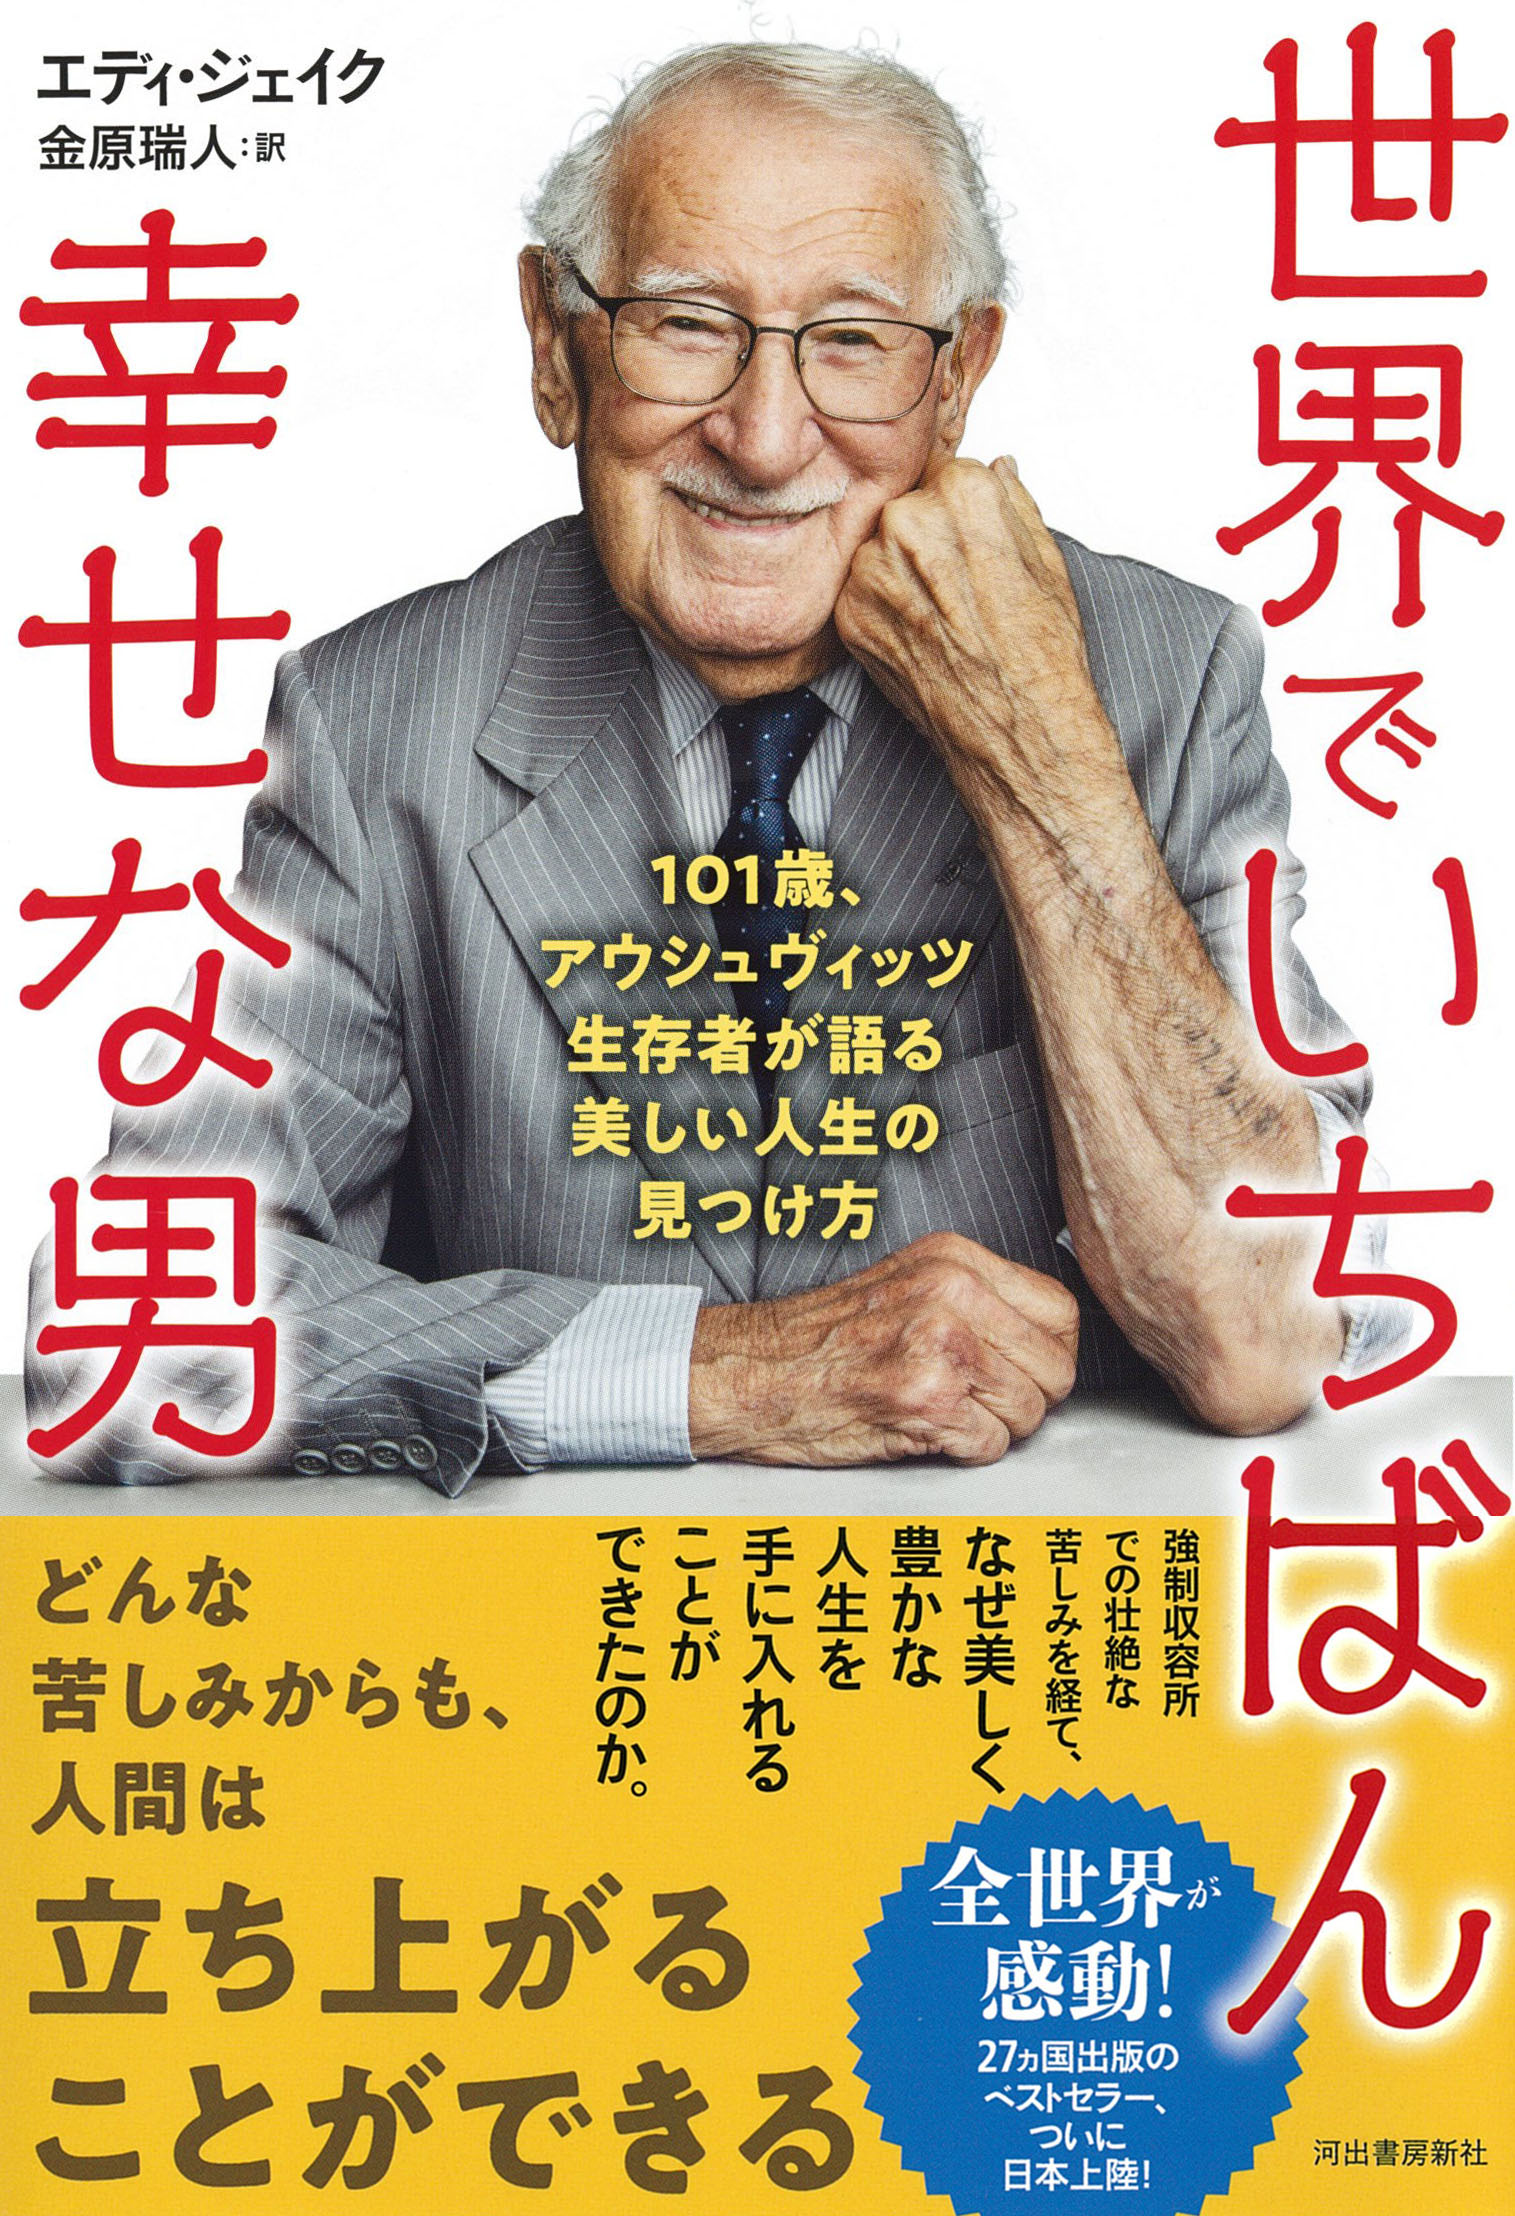 アウシュヴィッツ生存者による感動作 世界でいちばん幸せな男 世界の各紙誌が絶賛する話題書ついに日本上陸 河出書房新社のプレスリリース